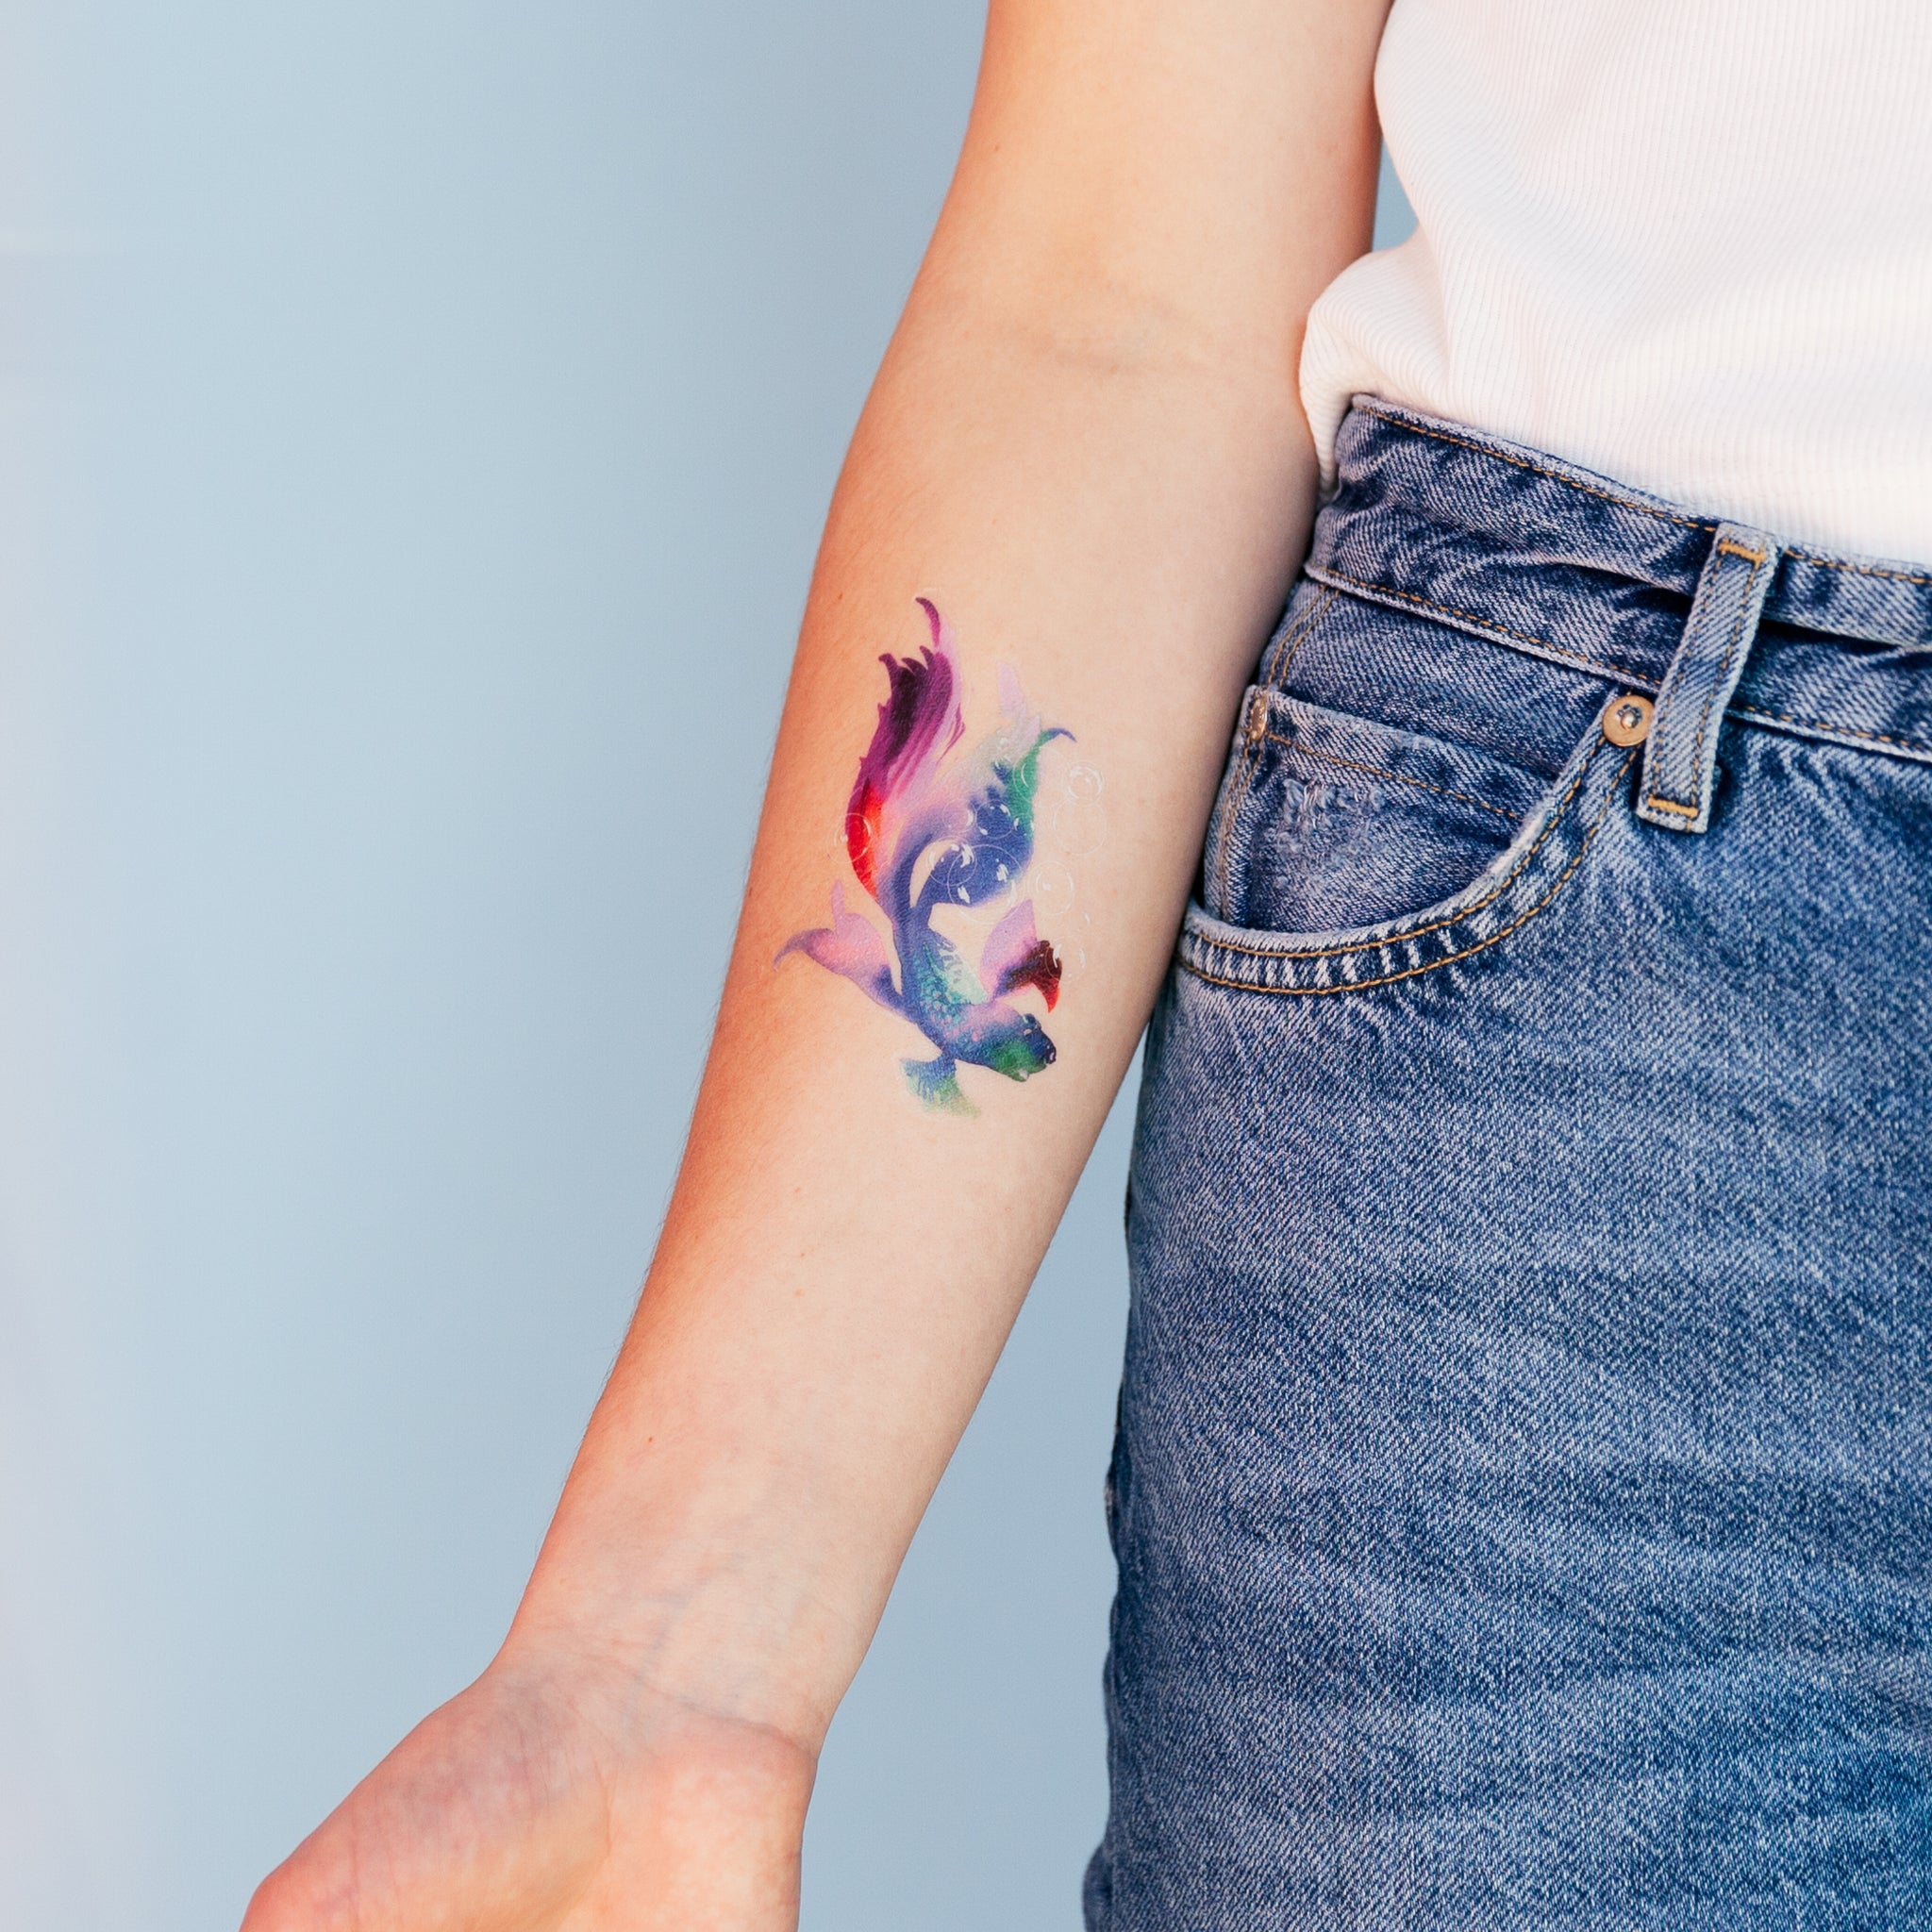 Little Tattoos — Betta Splendens fish tattoo. Tattoo artist: Doy